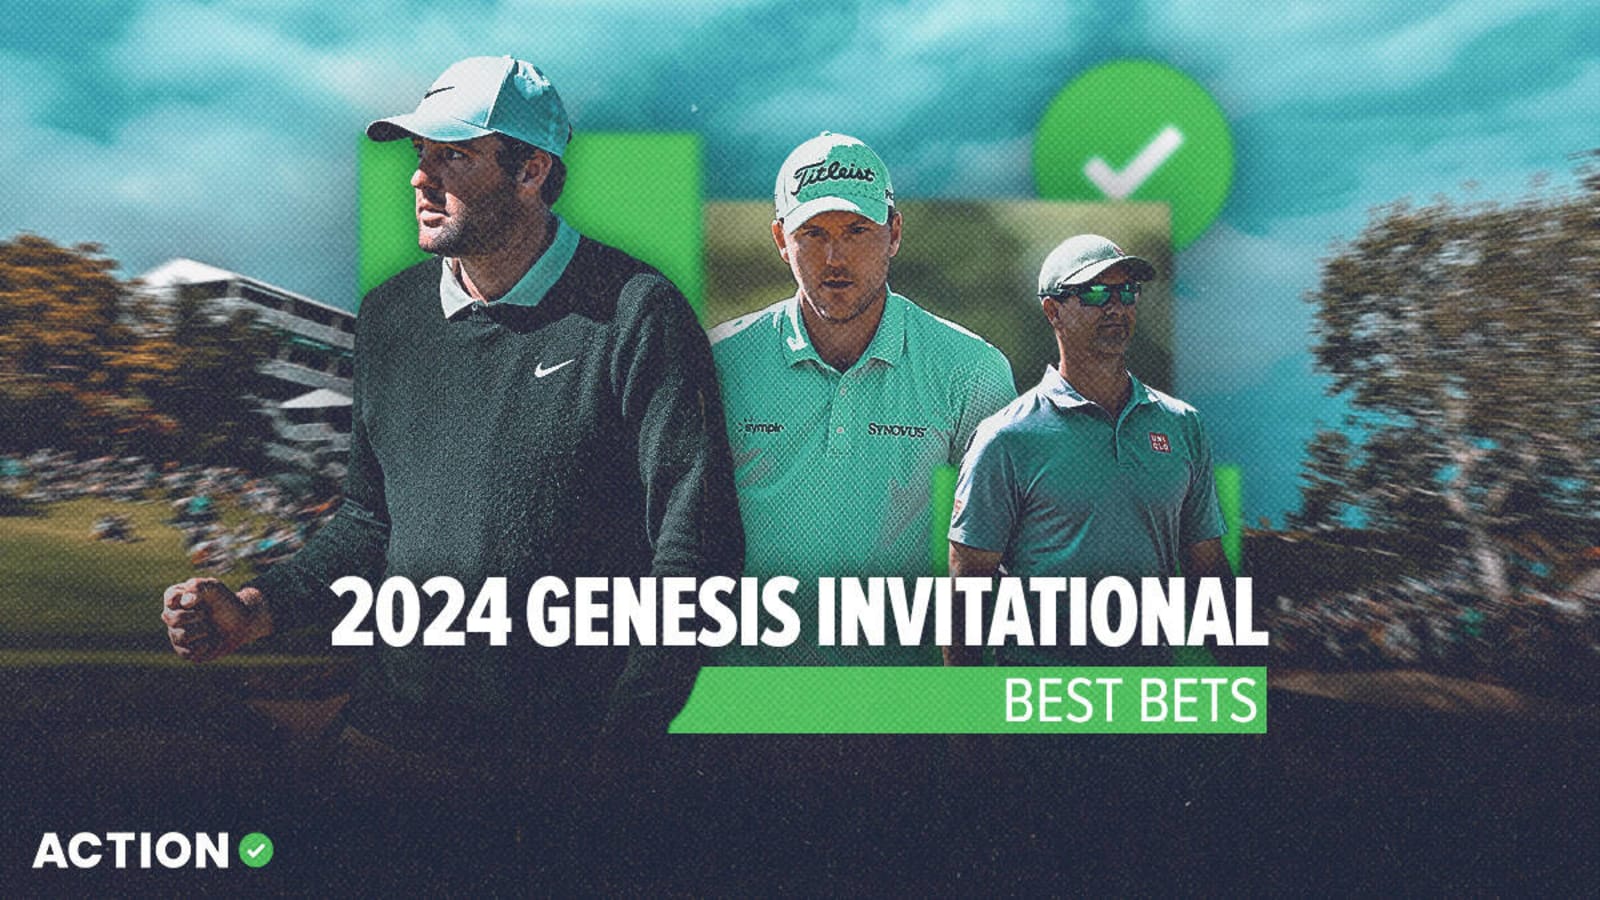 2024 Genesis Invitational best bets: Scottie Scheffler and more